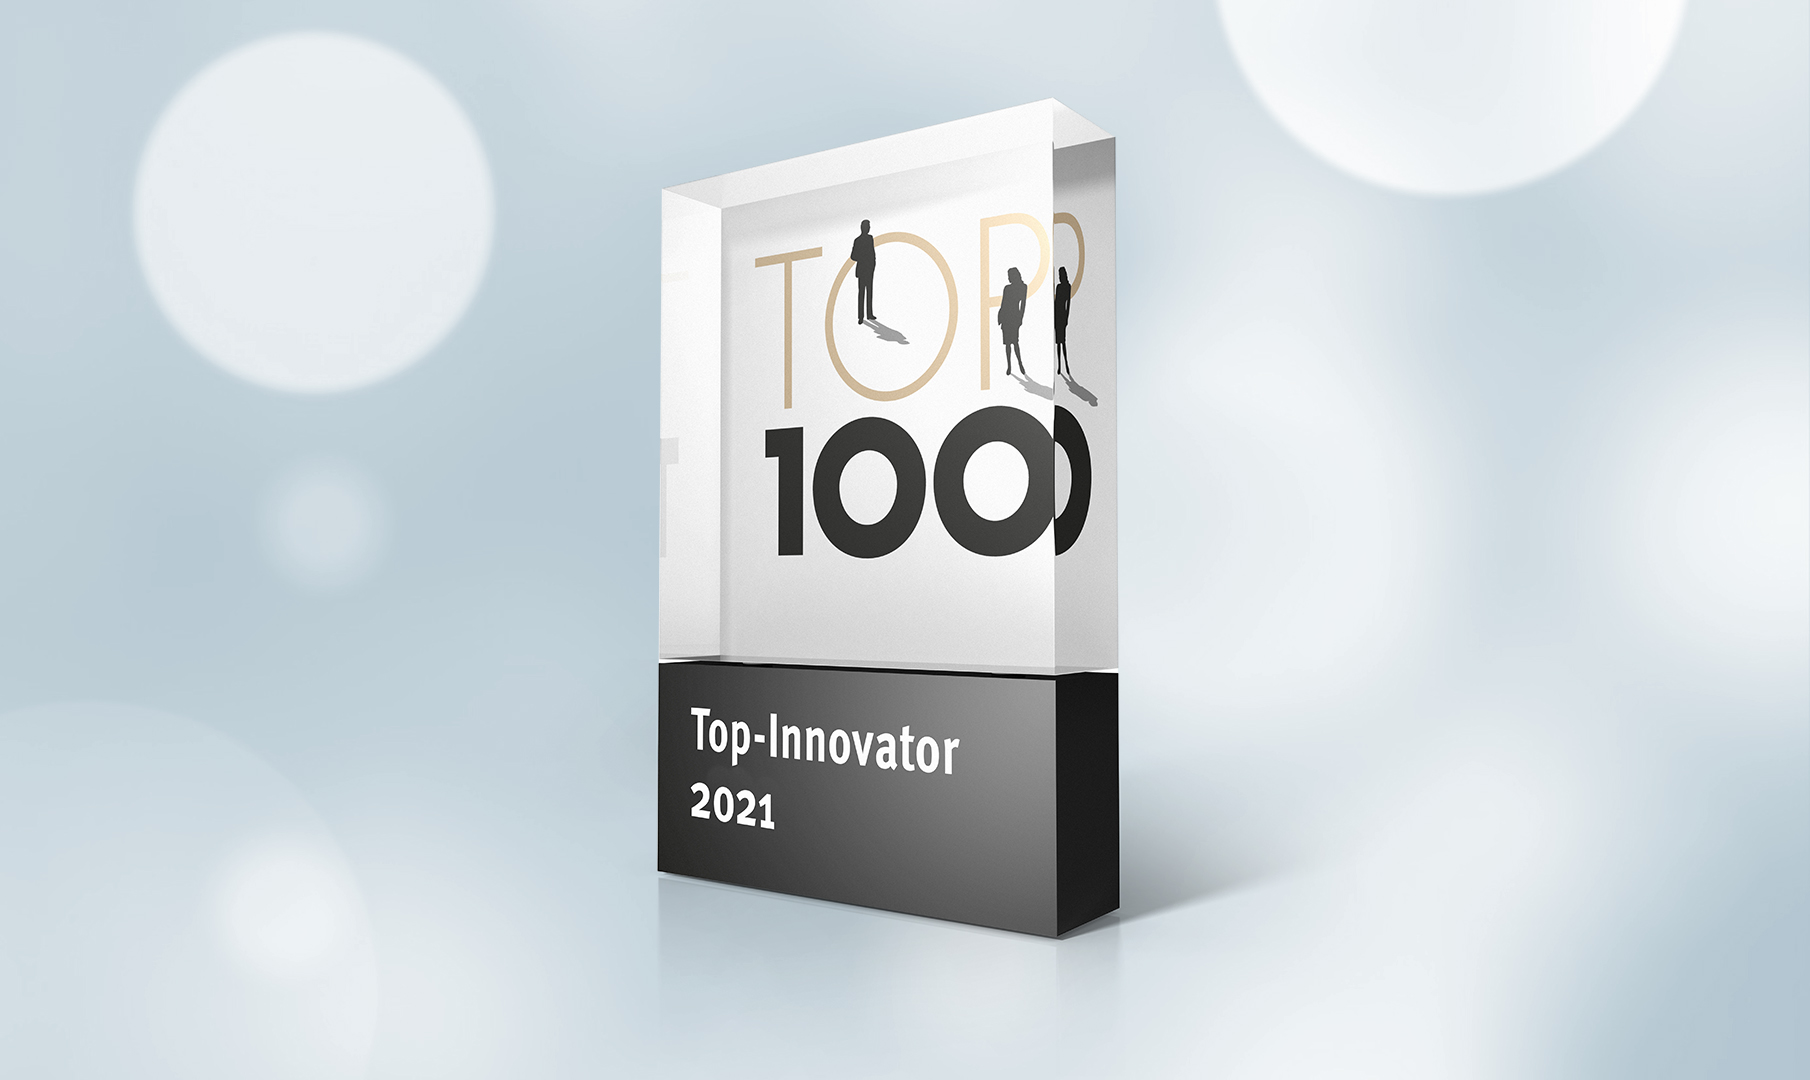 Döpker ist Top-Innovator 2021